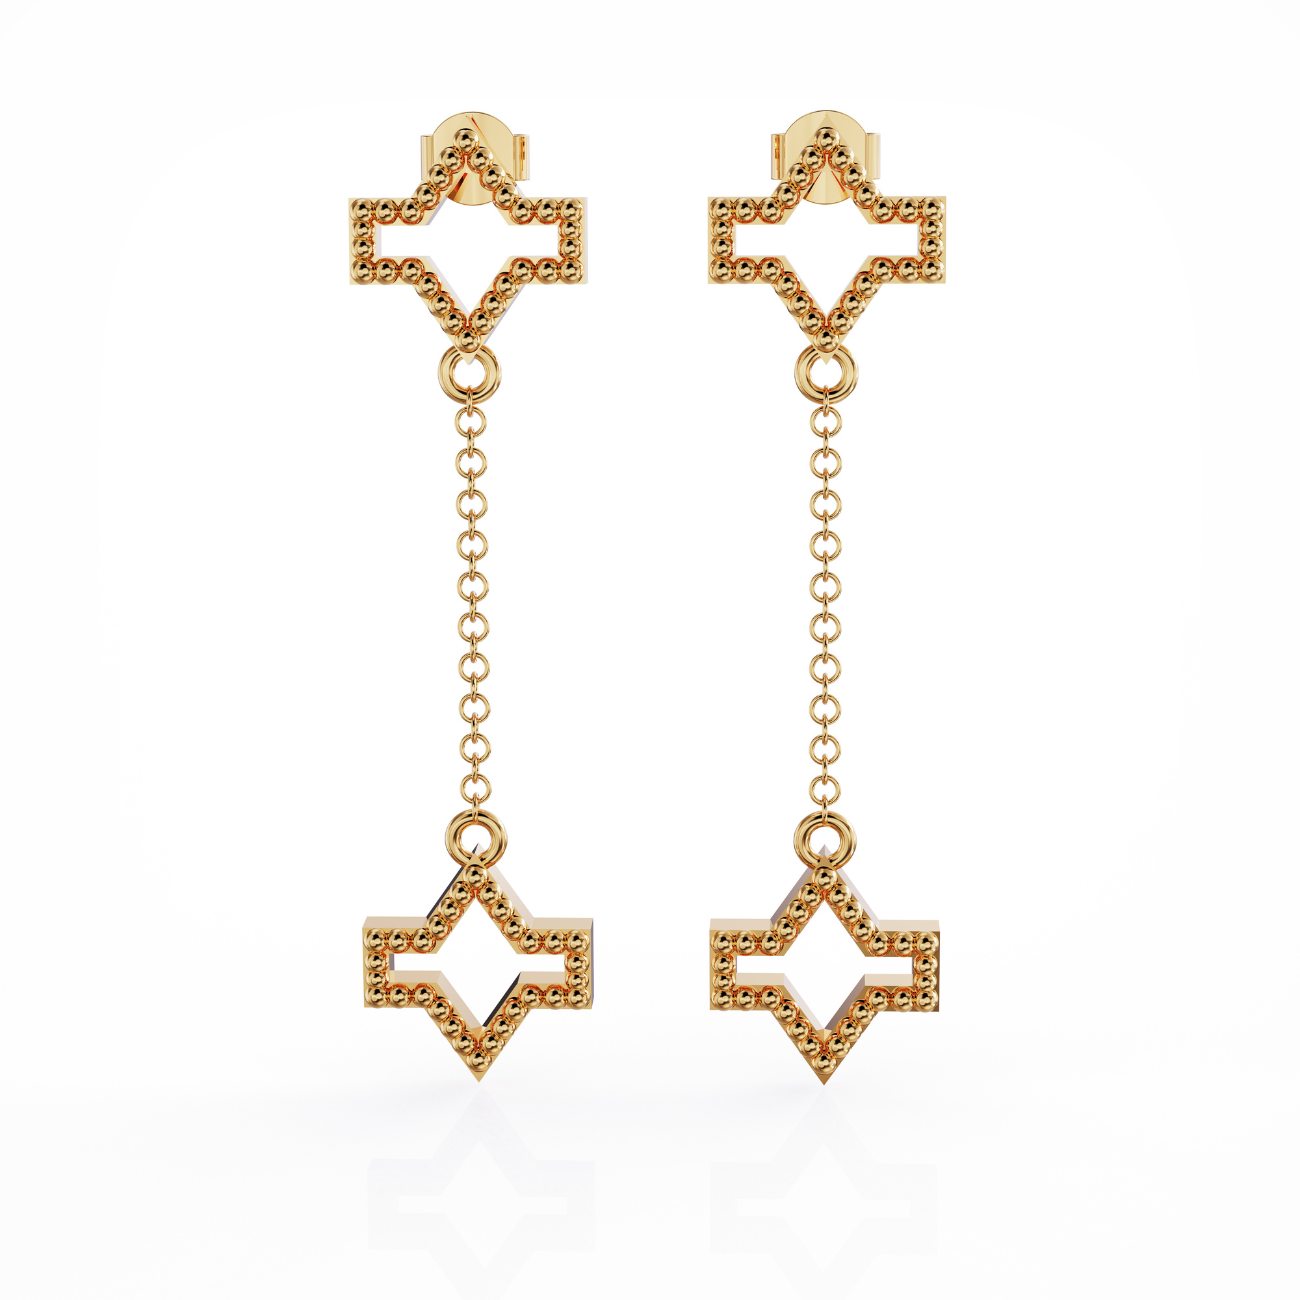 Starlite earring, 18k gold